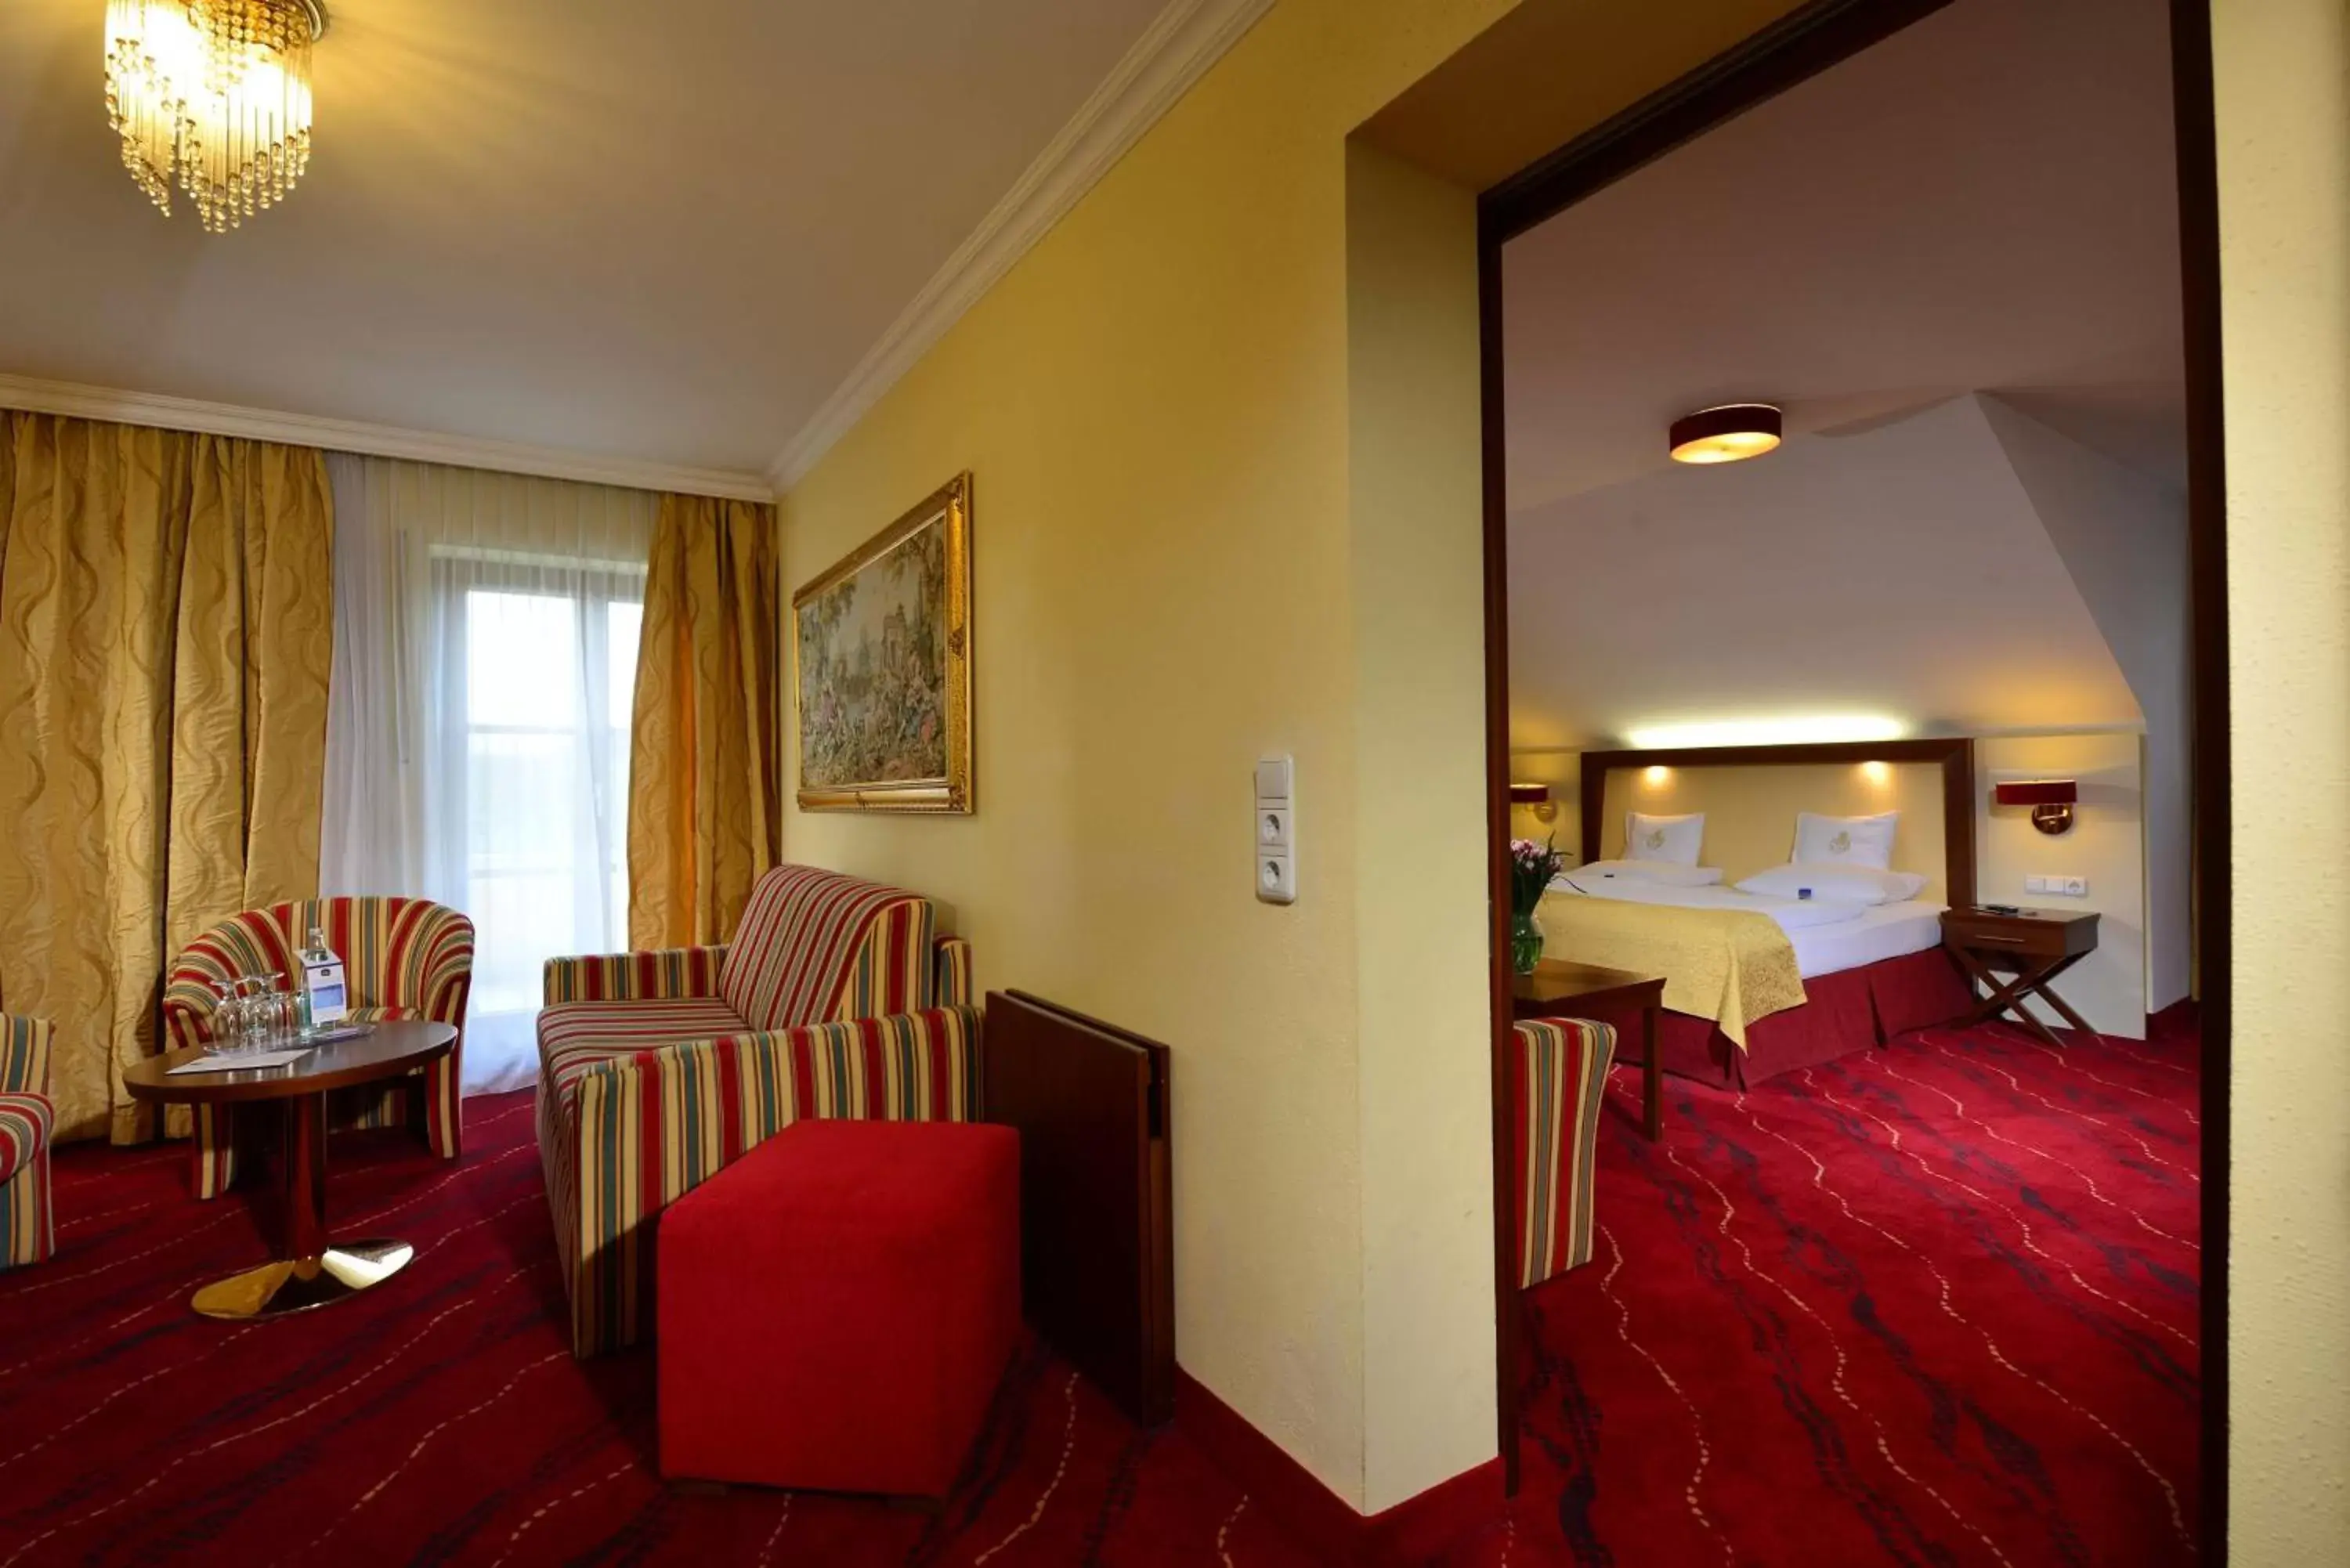 Bedroom, Seating Area in Best Western Plus Hotel Erb